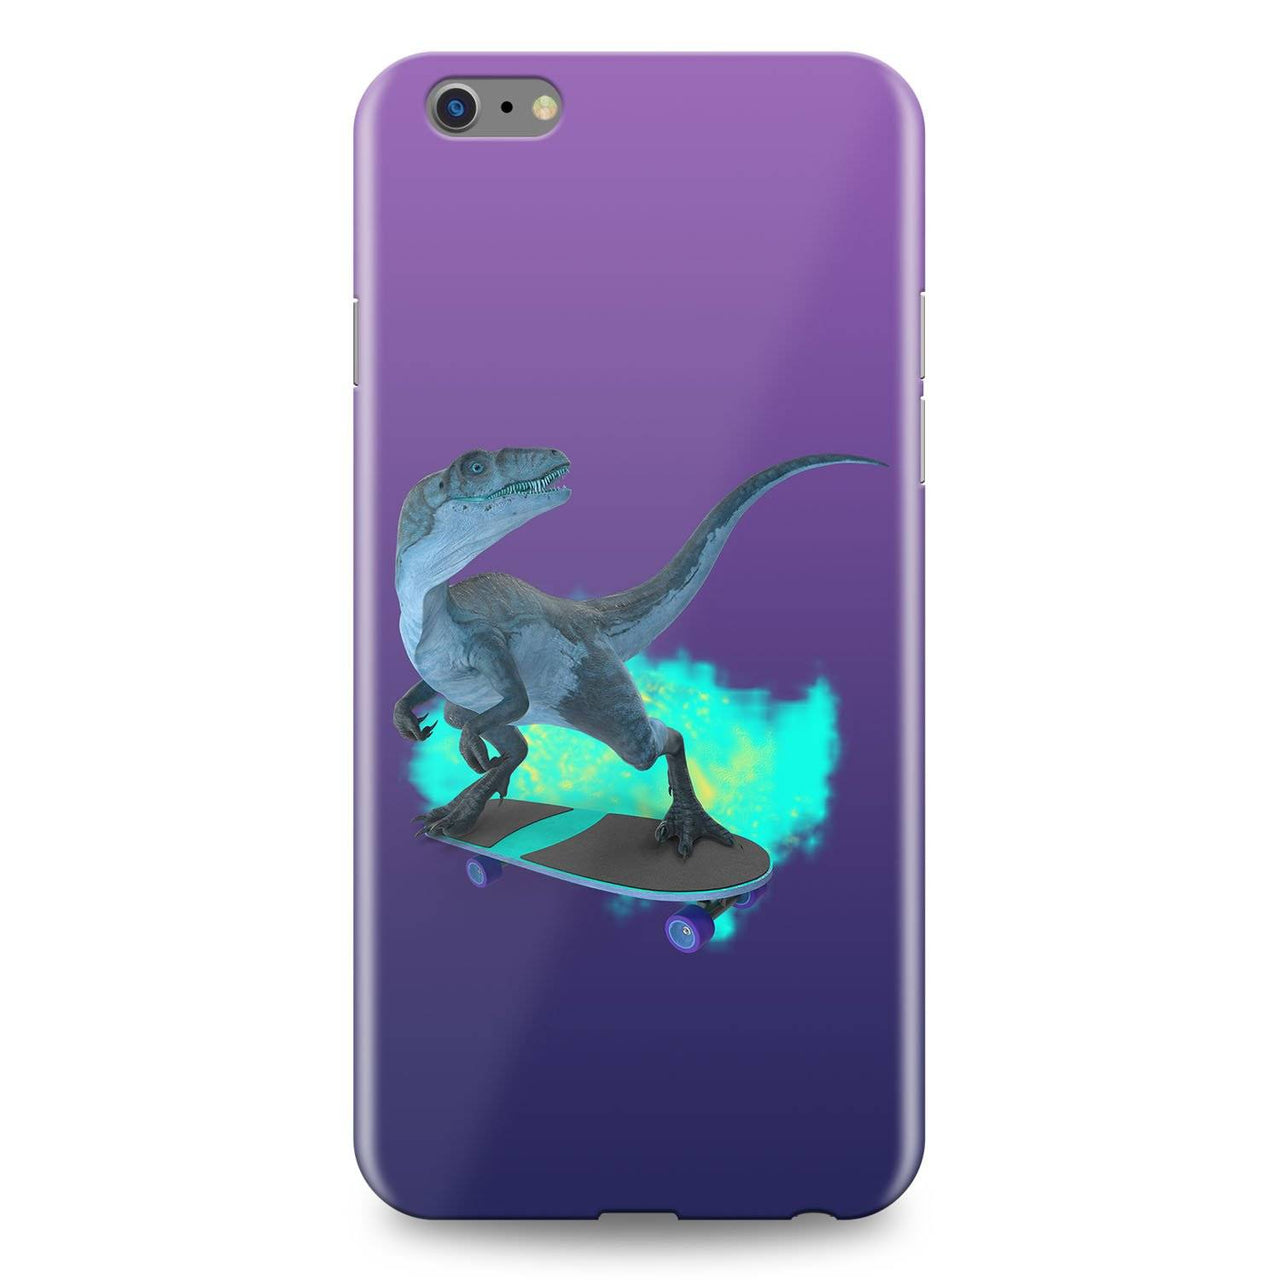 Dinosaur on Wheels Skatebord Dinosaur Samsung Phone Case